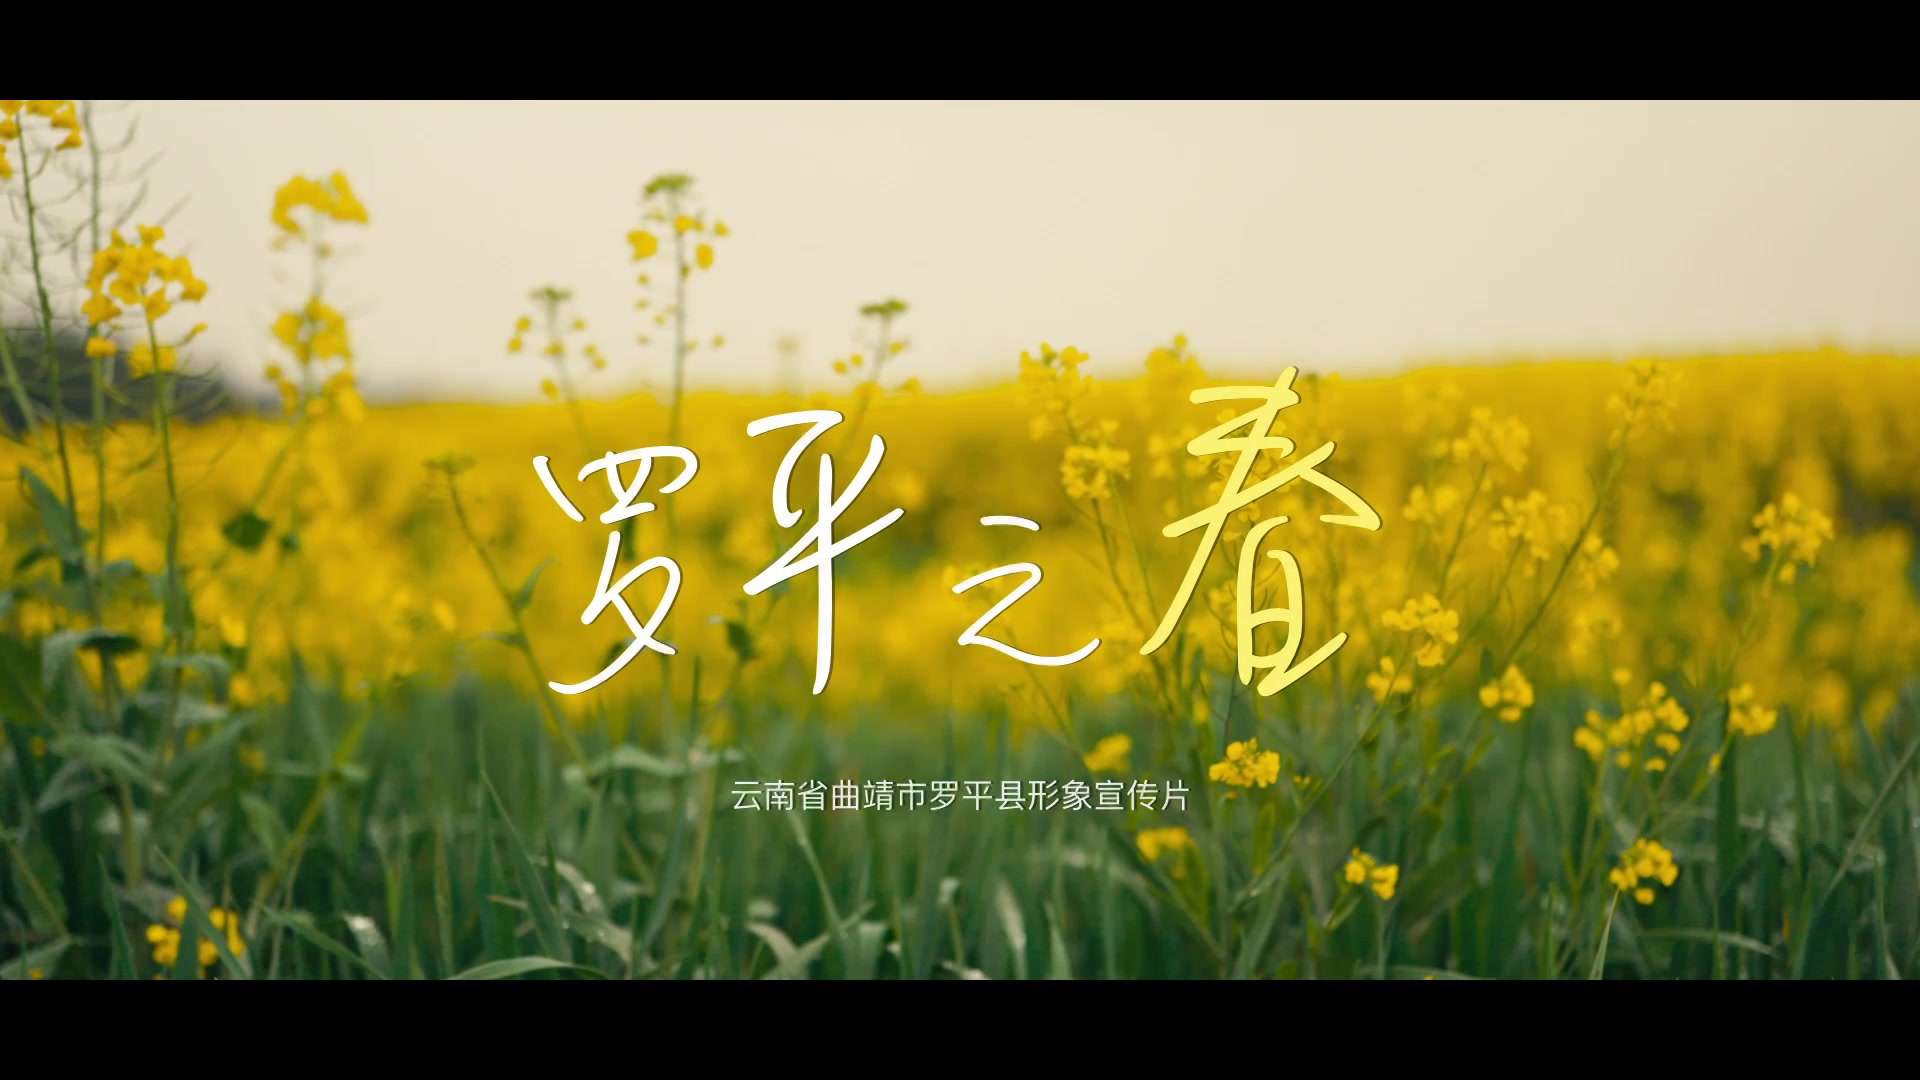 微拍中国罗平站《罗平之春》